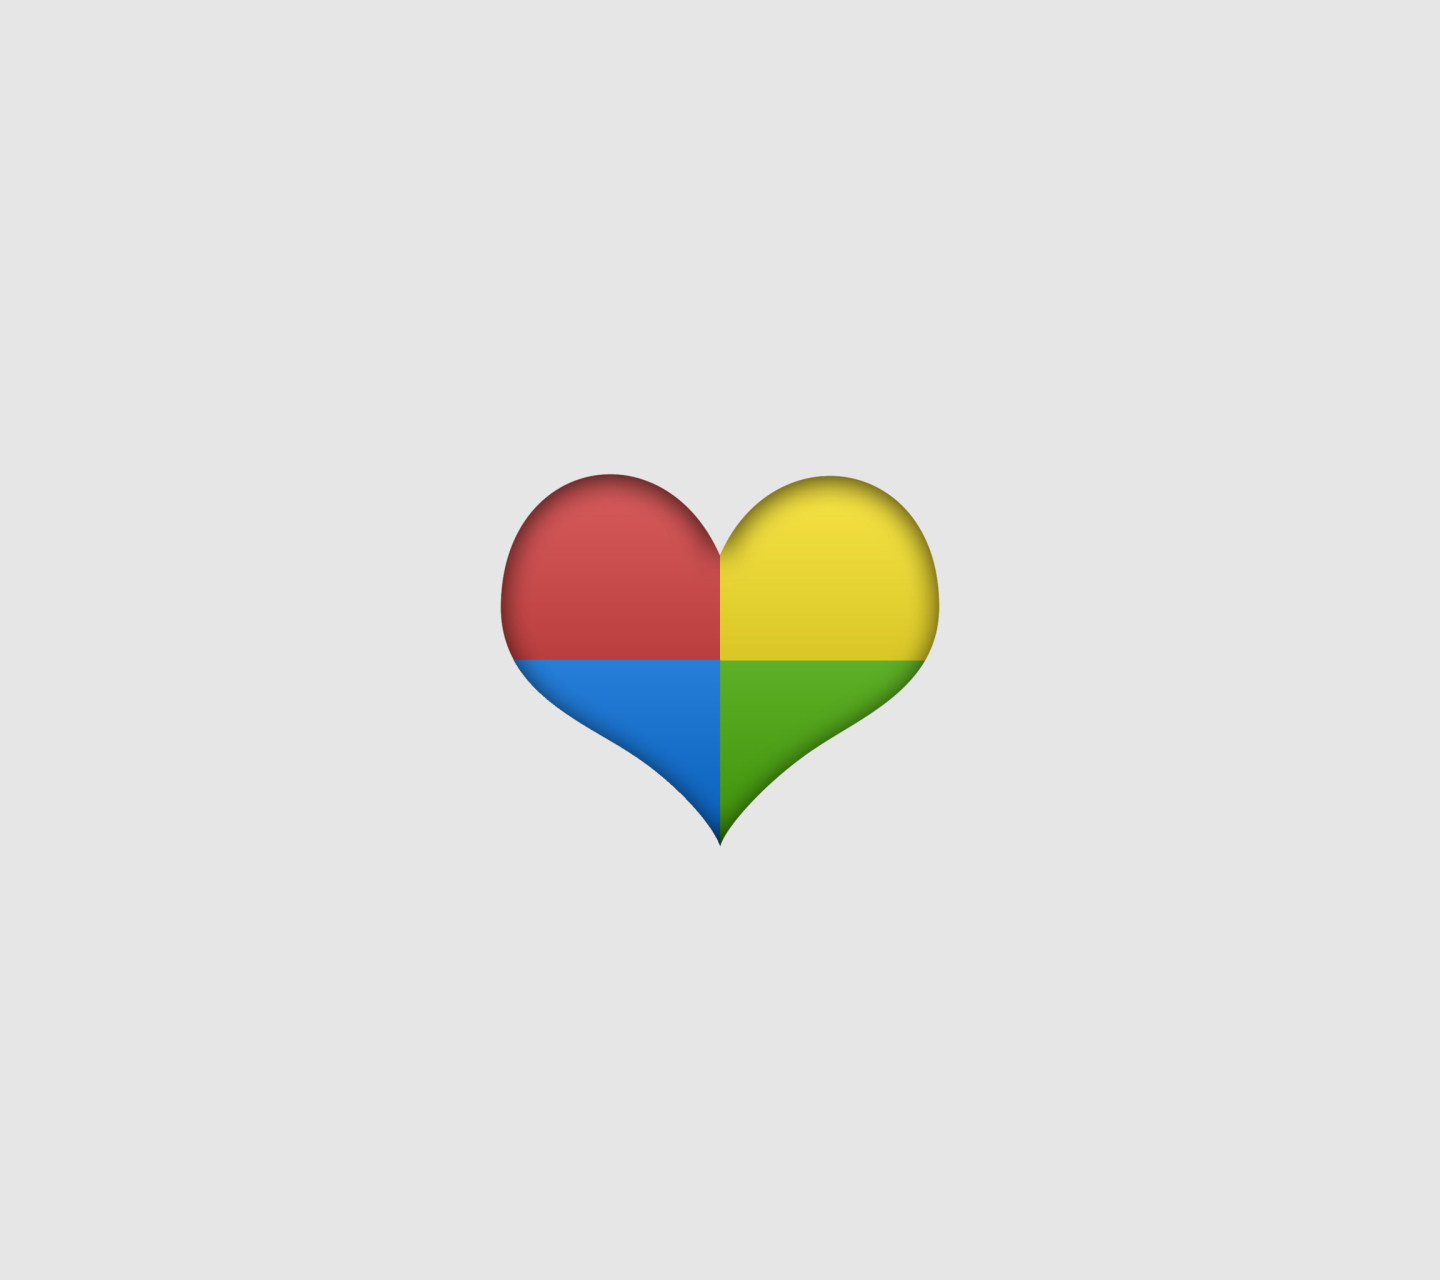 Das Google Heart Wallpaper 1440x1280